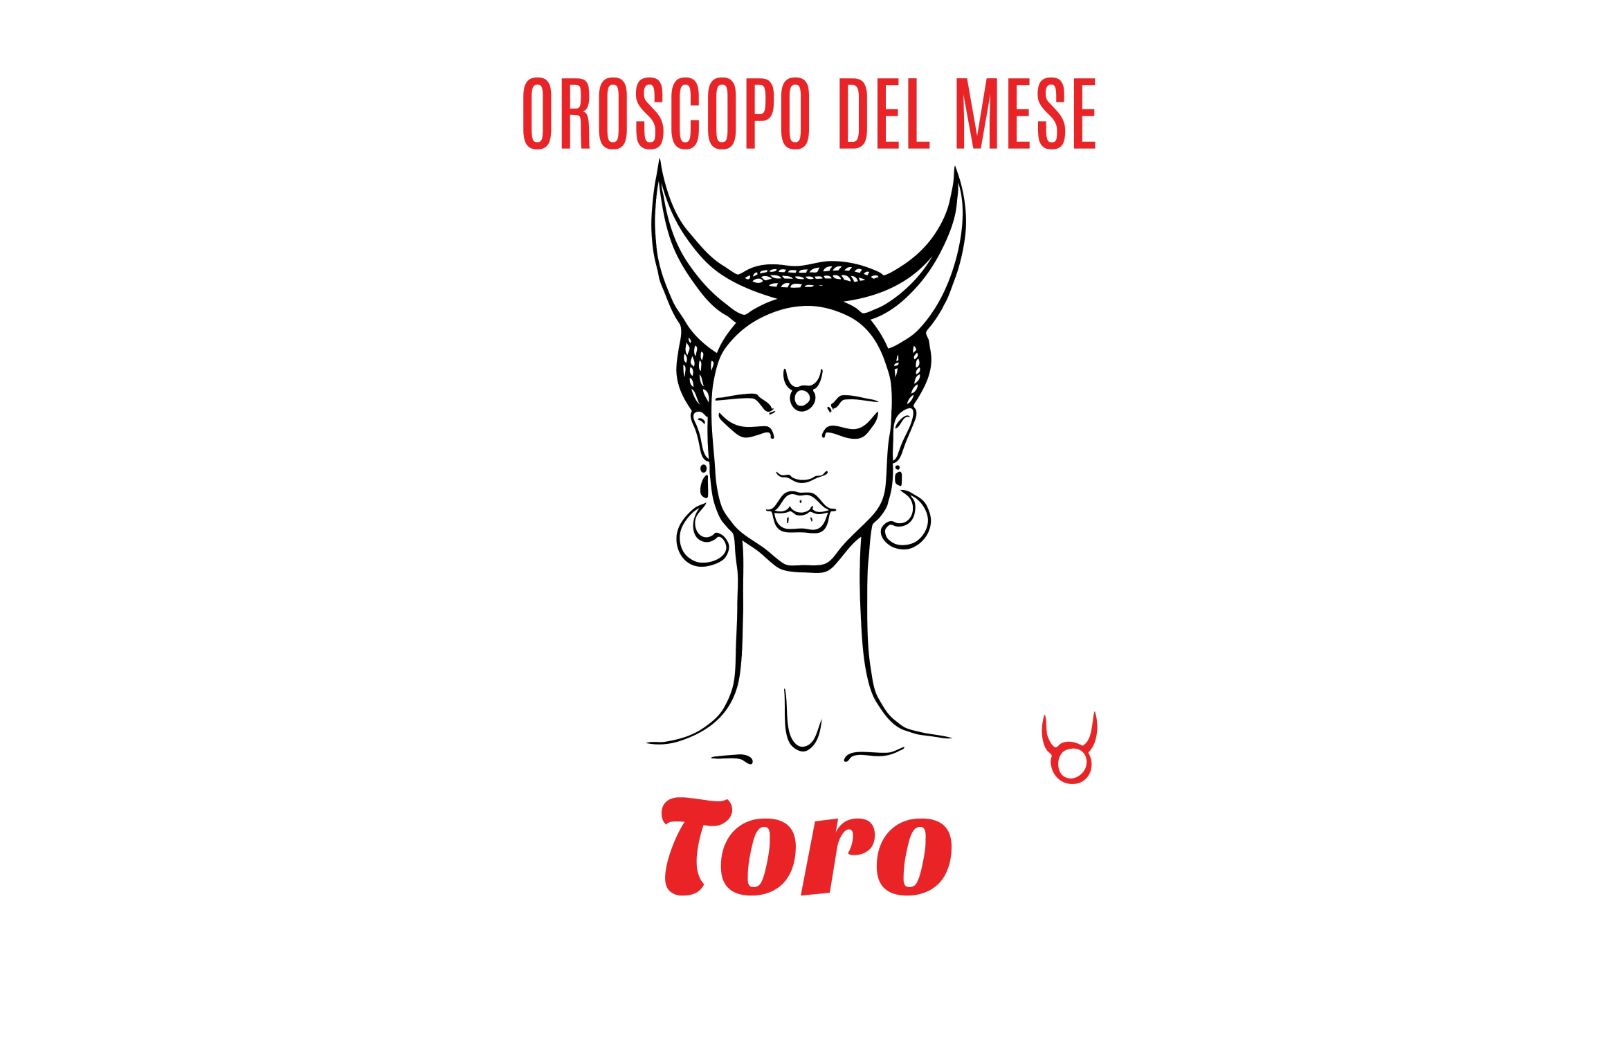 Oroscopo del mese: Toro - settembre 2018